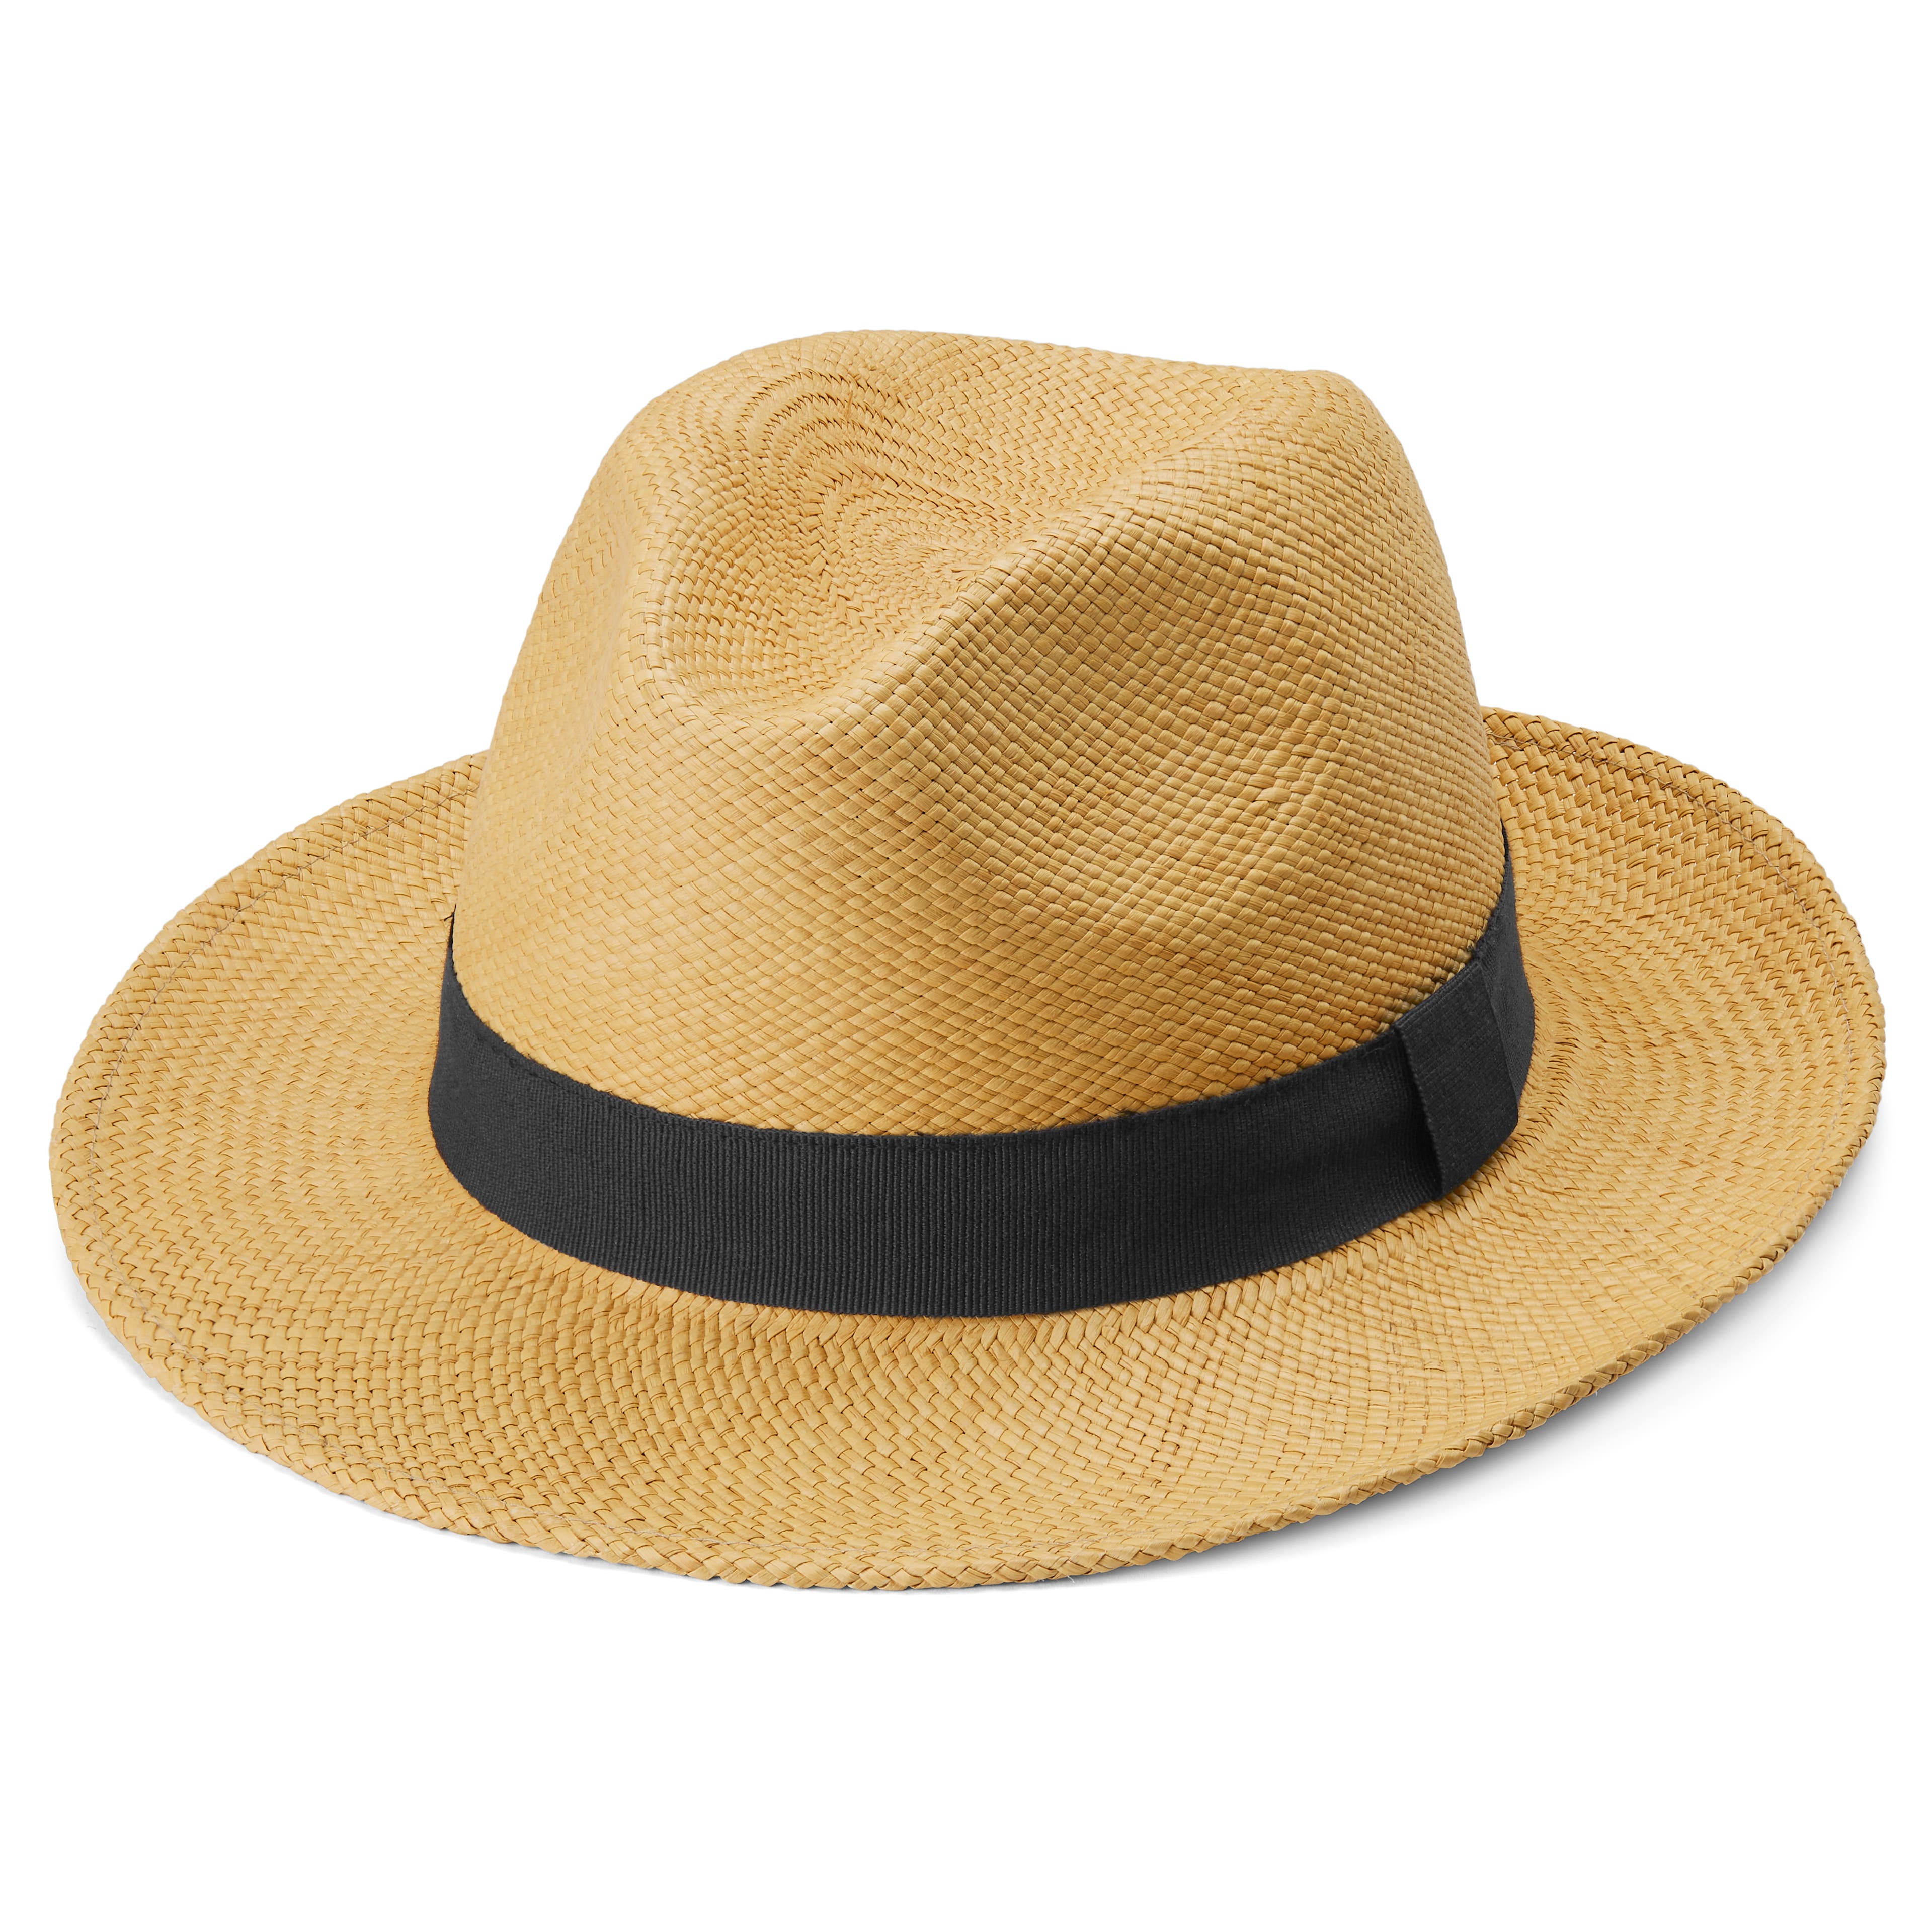 Jasnobrązowy kapelusz panama z granatową opaską Piero Moda